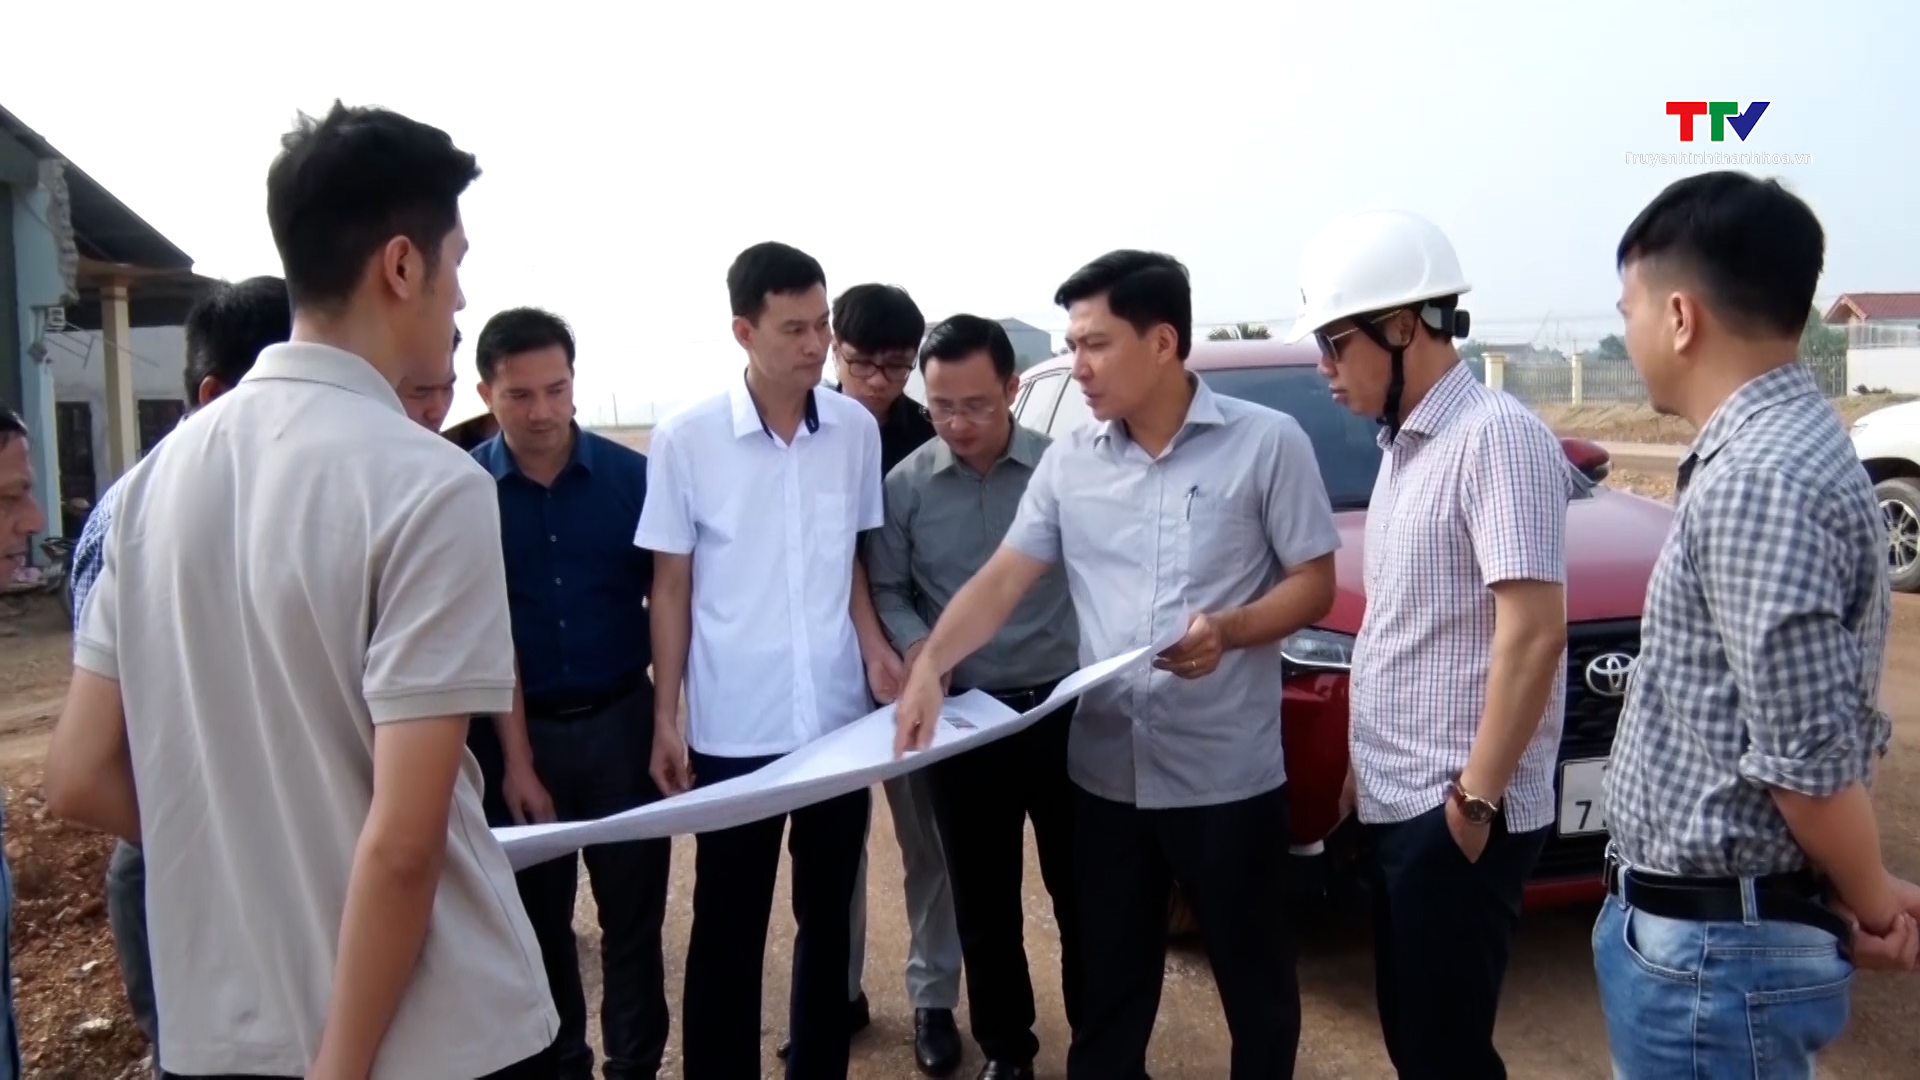 Huyện Thiệu Hoá dẫn đầu toàn tỉnh về giải ngân vốn đầu tư công- Ảnh 3.